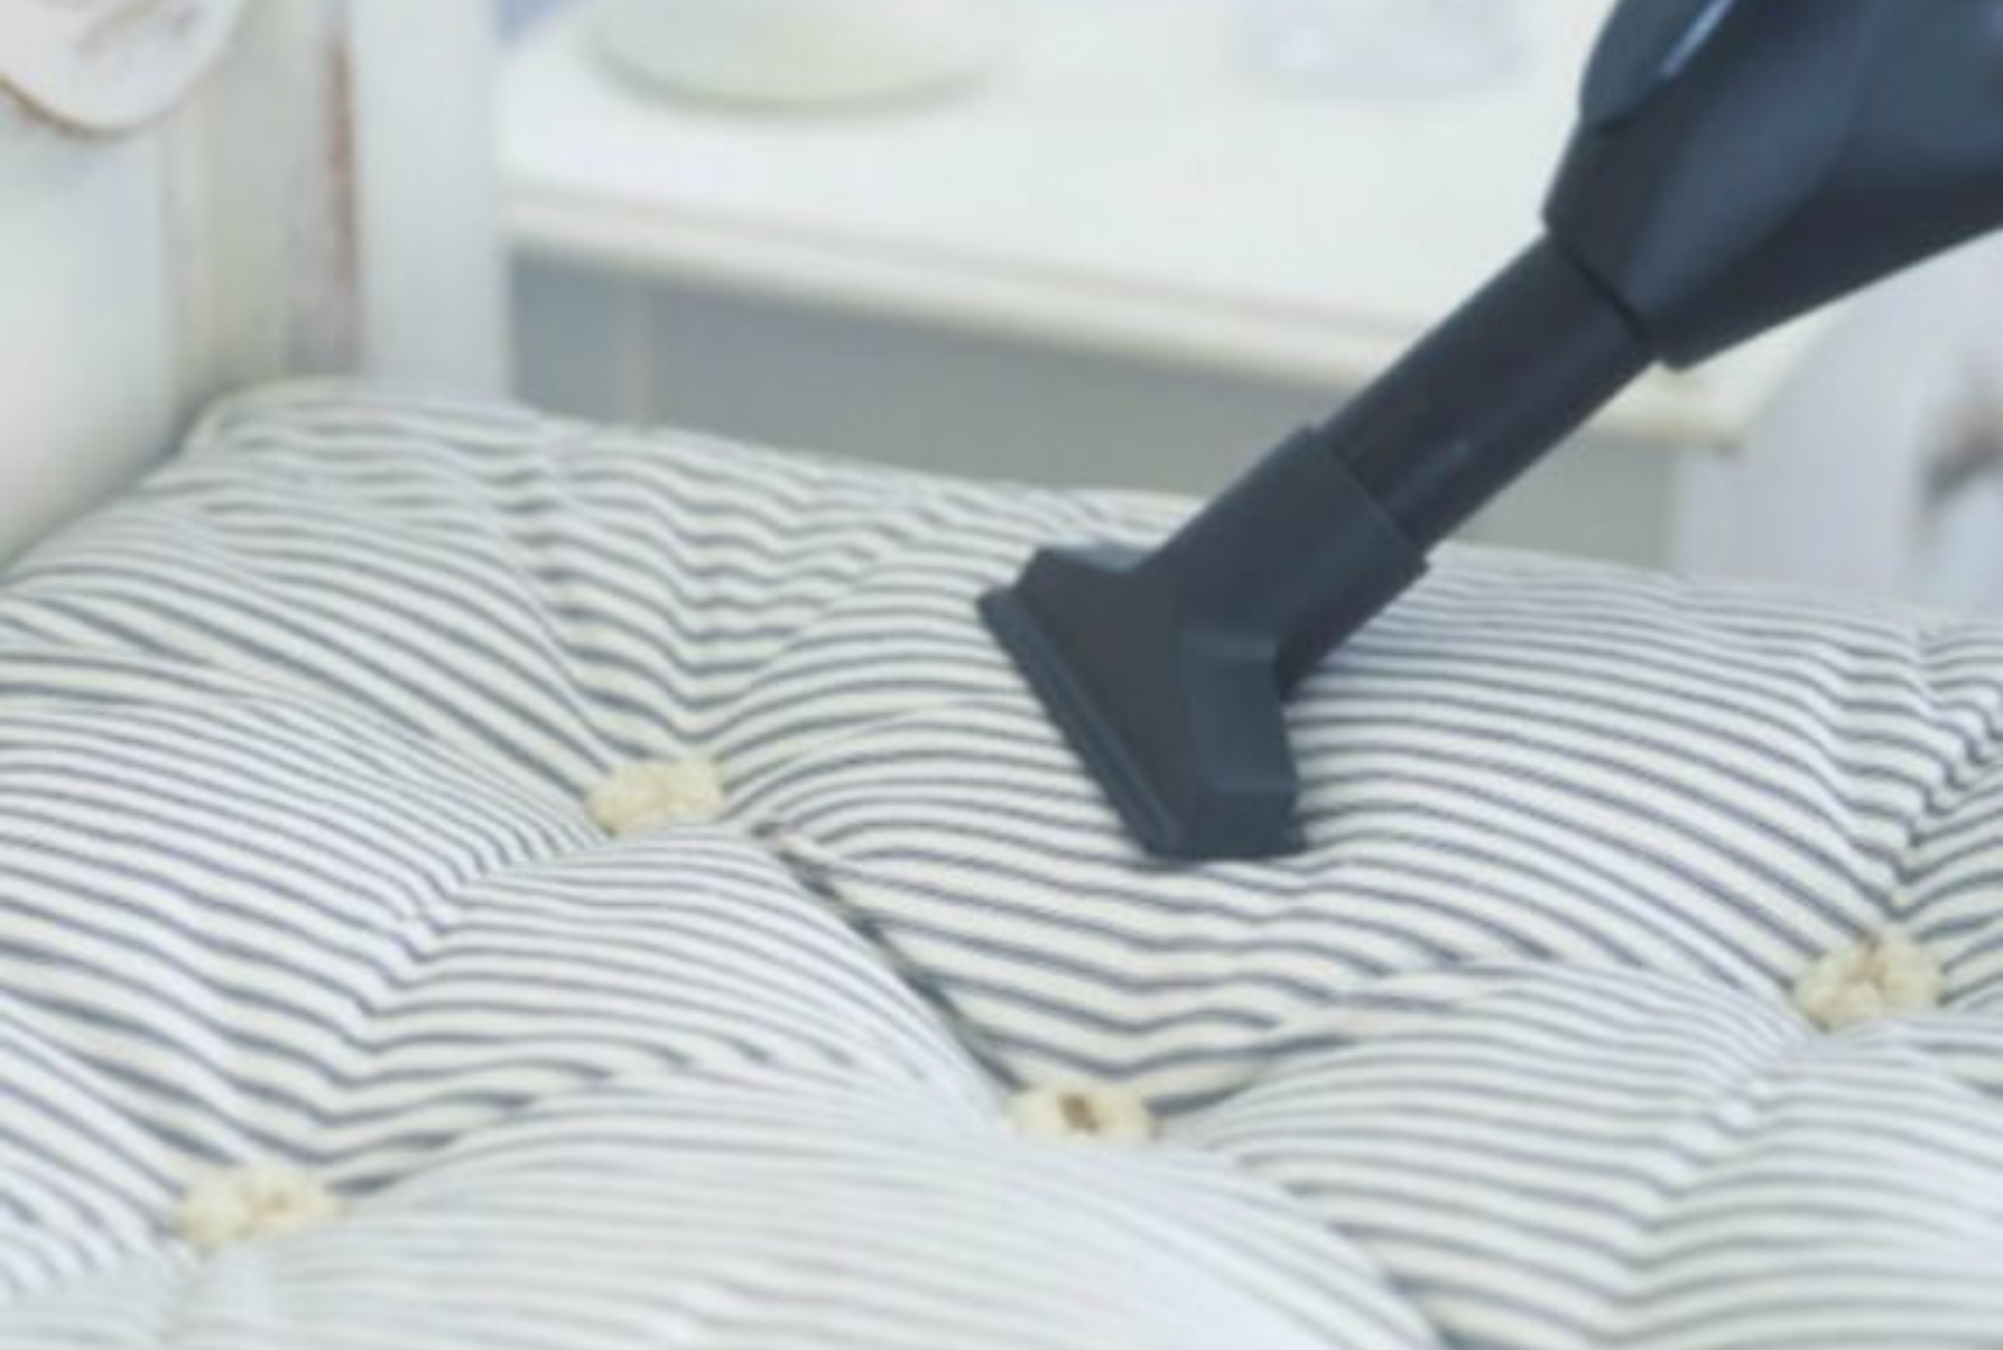 Βρώμικο στρώμα αρμοί σχάρες και άλατα: Καθαρίστε όλα τα δύσκολα σημεία του σπιτιού εύκολα και γρήγορα